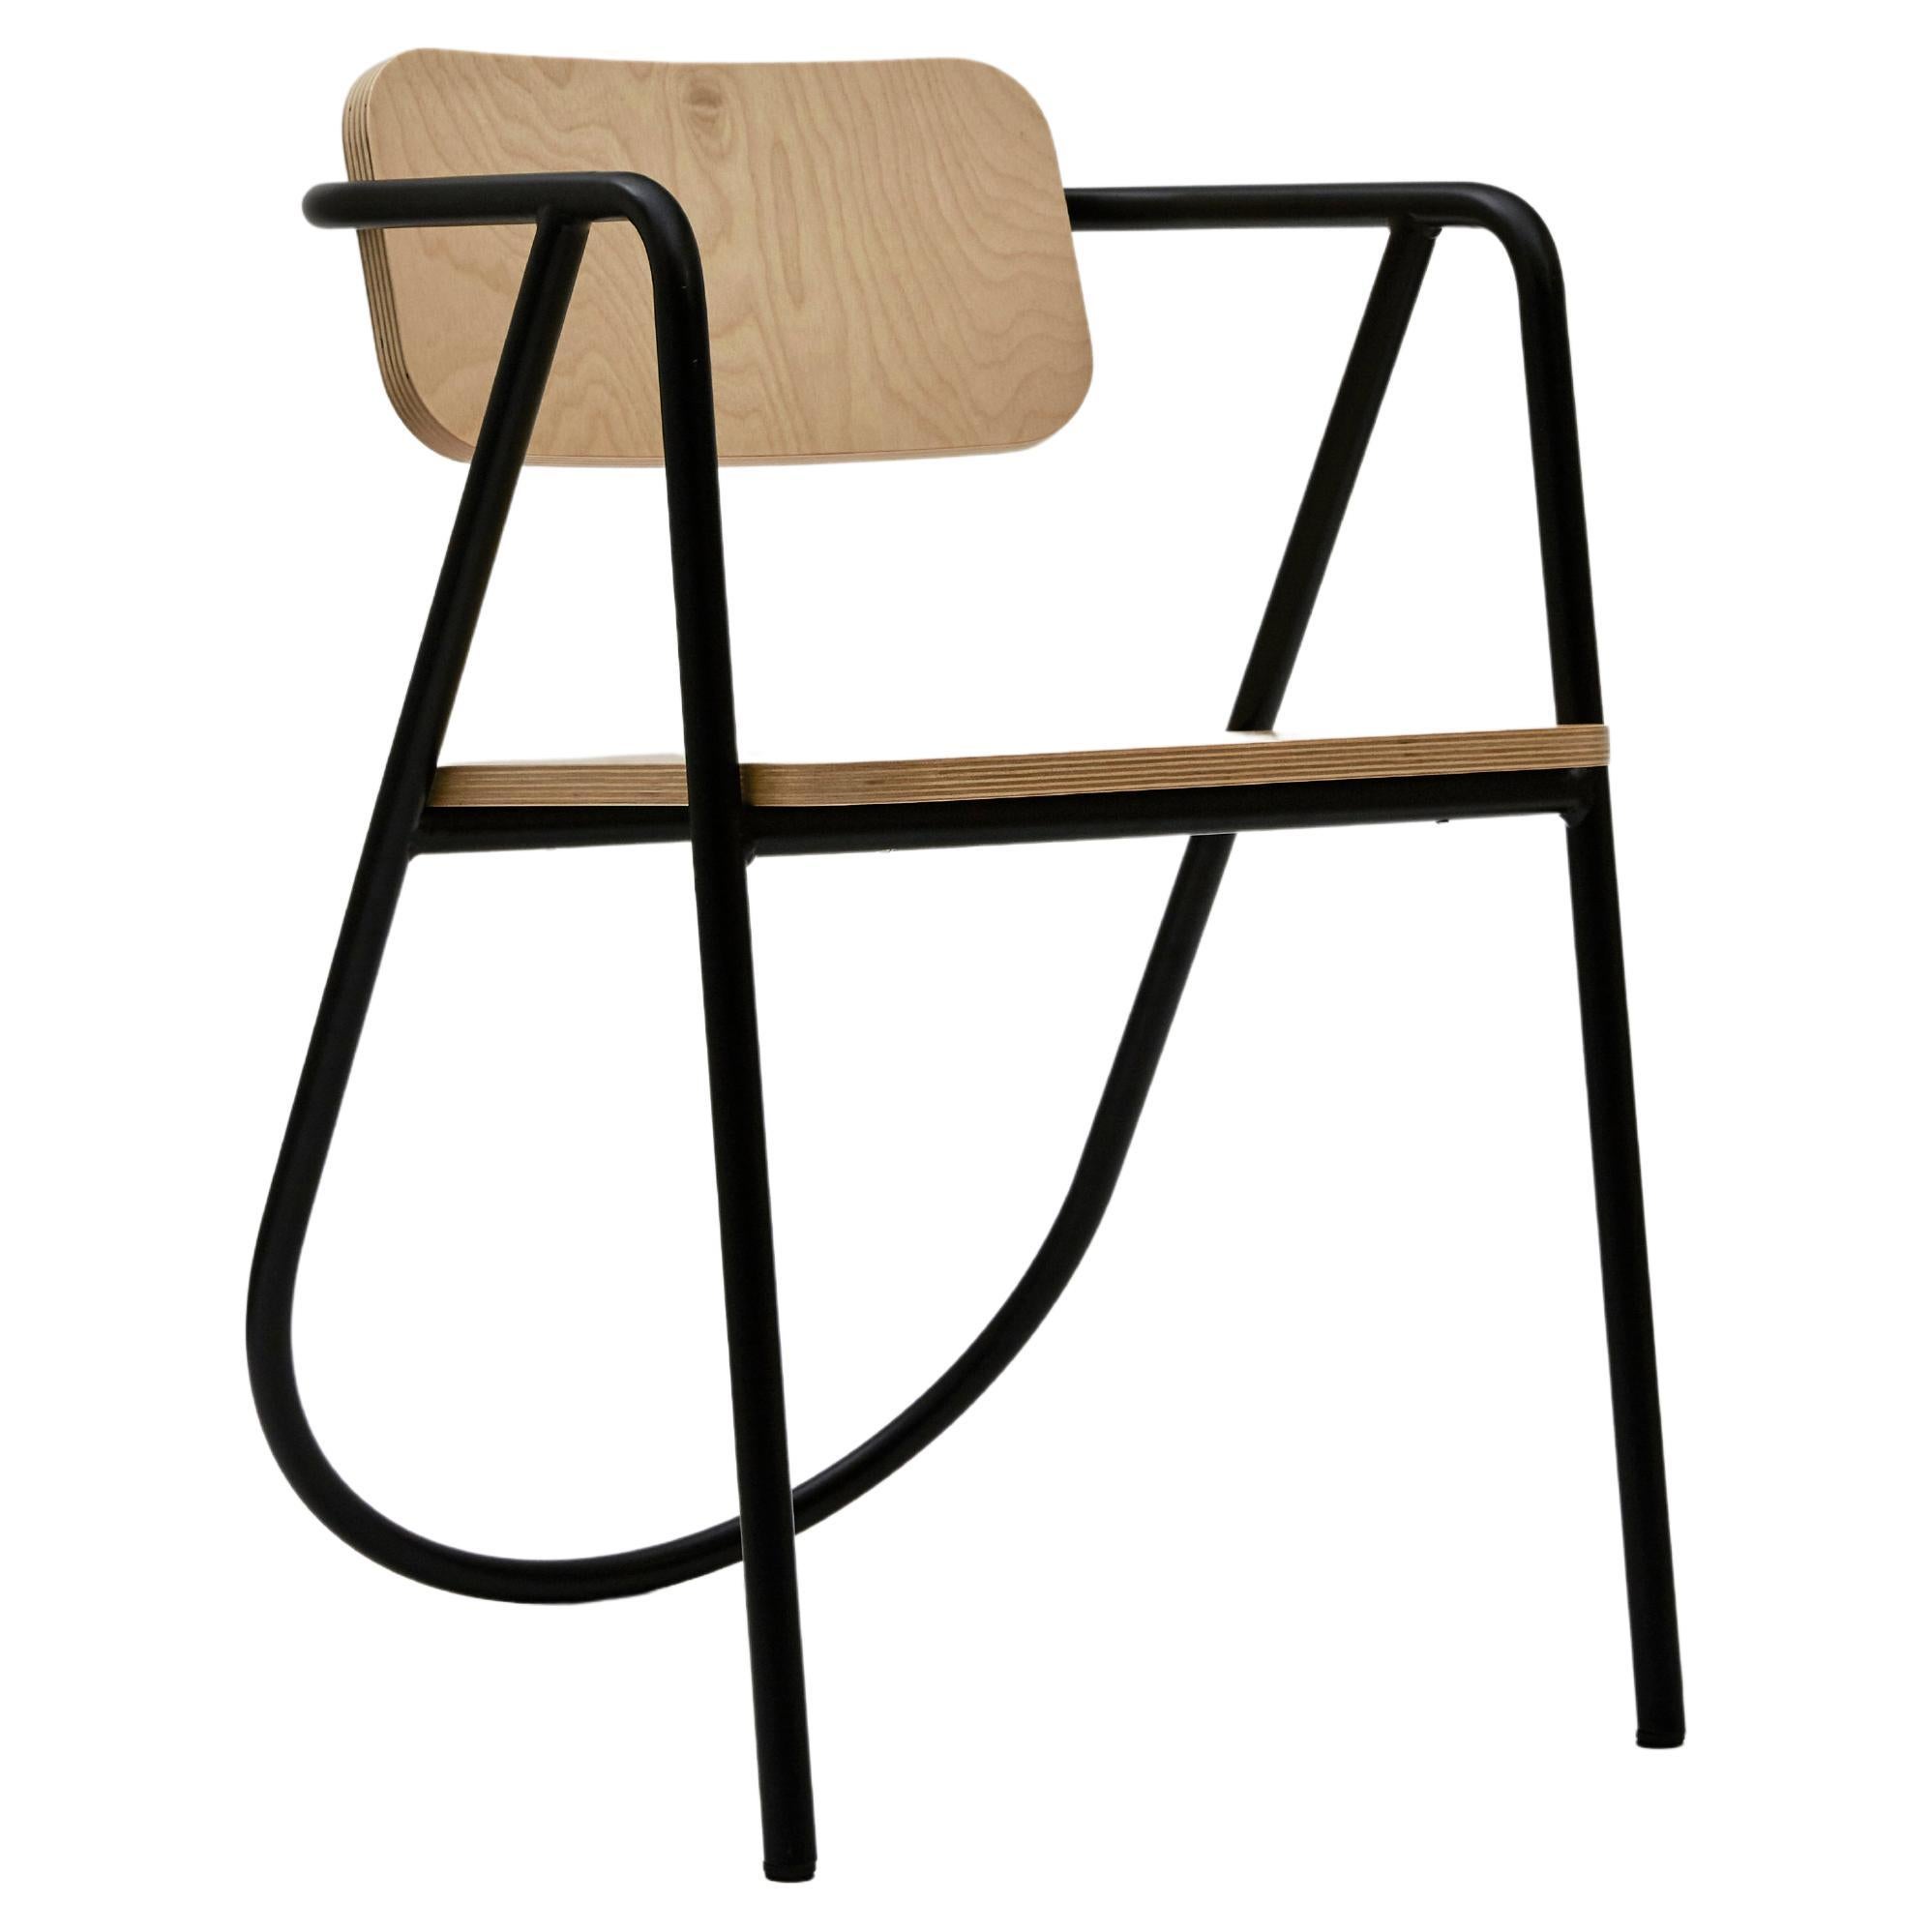 La Misciù Chair, Light Wooden & Black For Sale